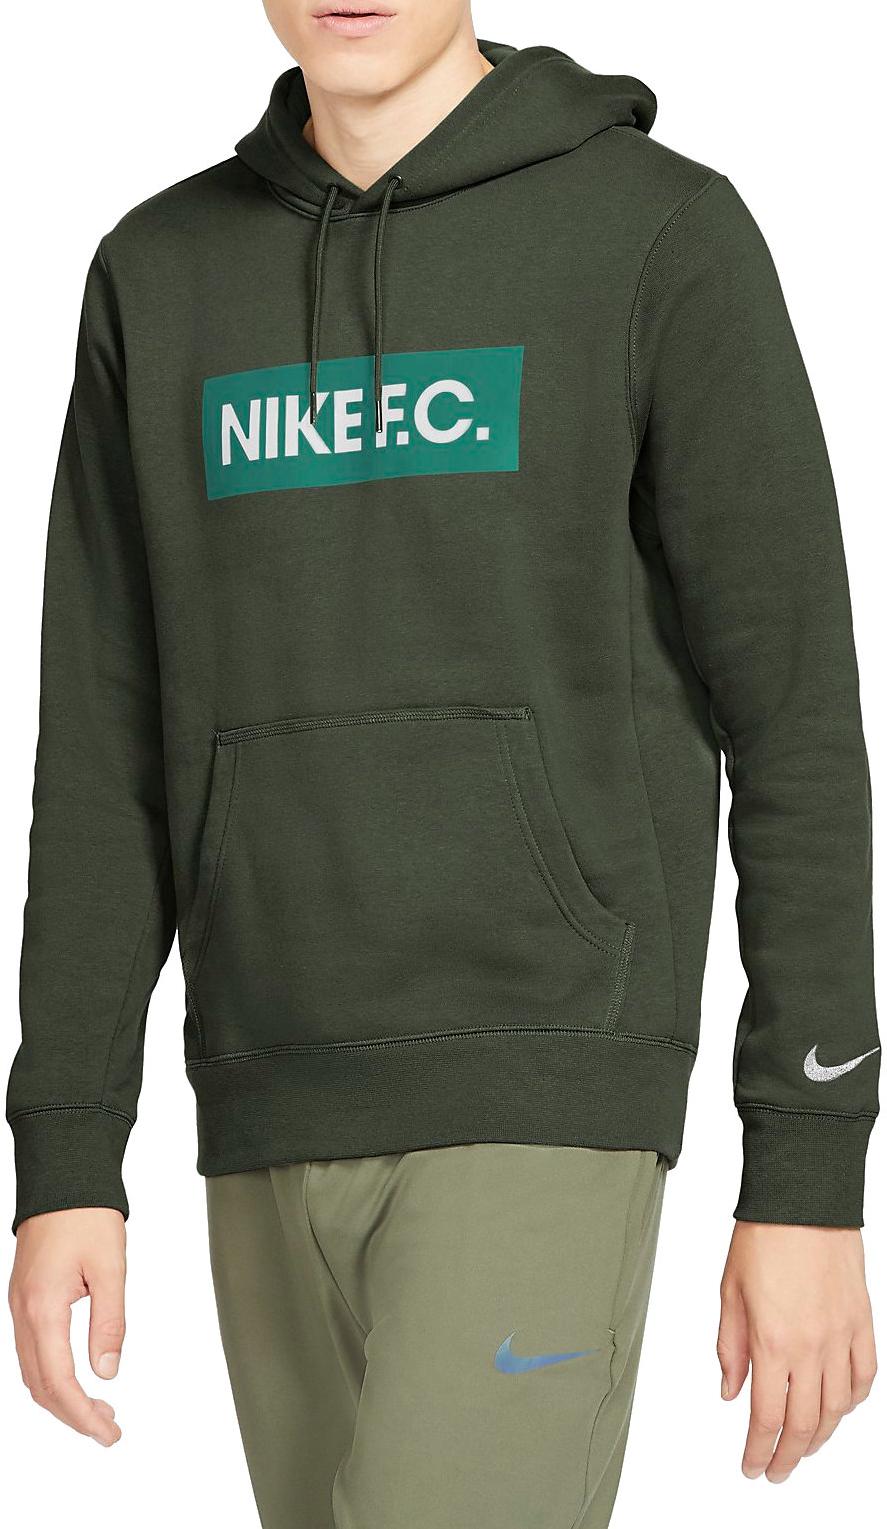 Φούτερ-Jacket με κουκούλα Nike F.C. Men s Pullover Fleece Soccer Hoodie